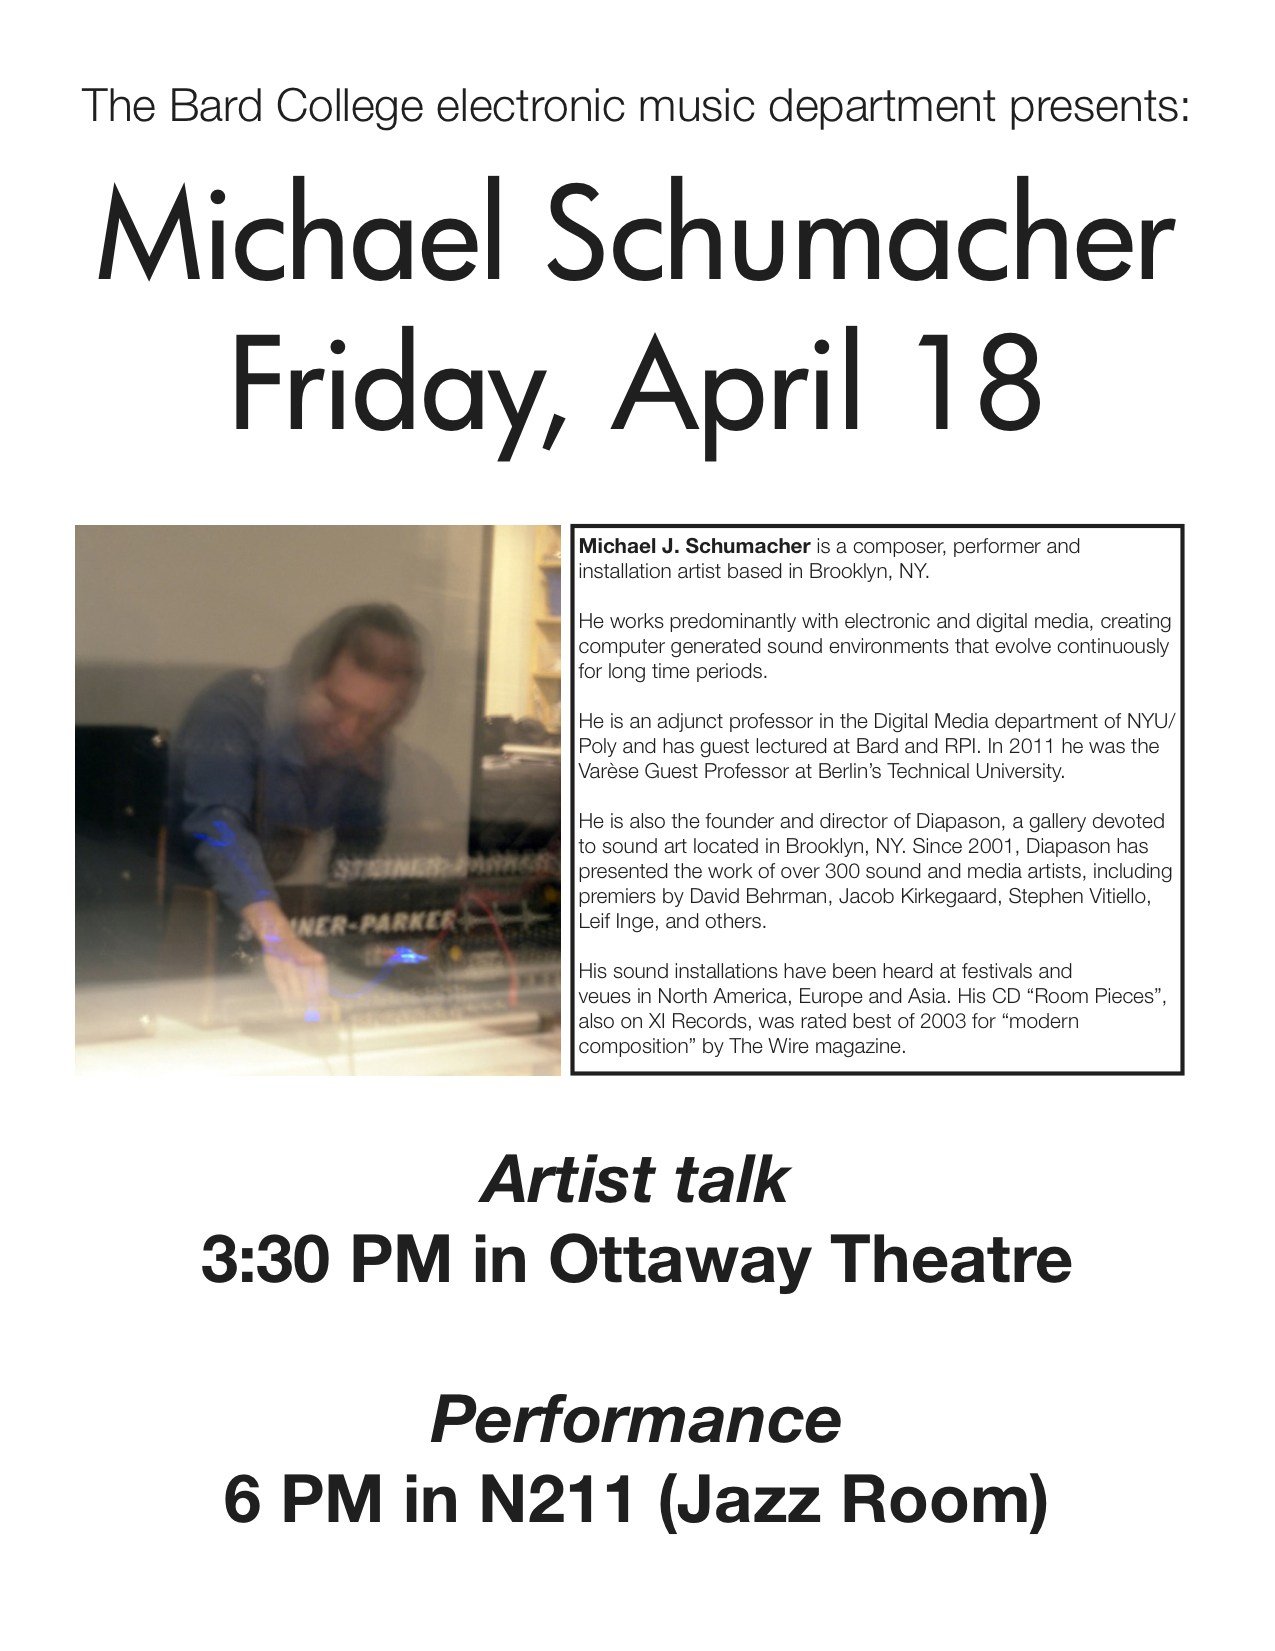 Guest Artist&nbsp;Michael J. Schumacher